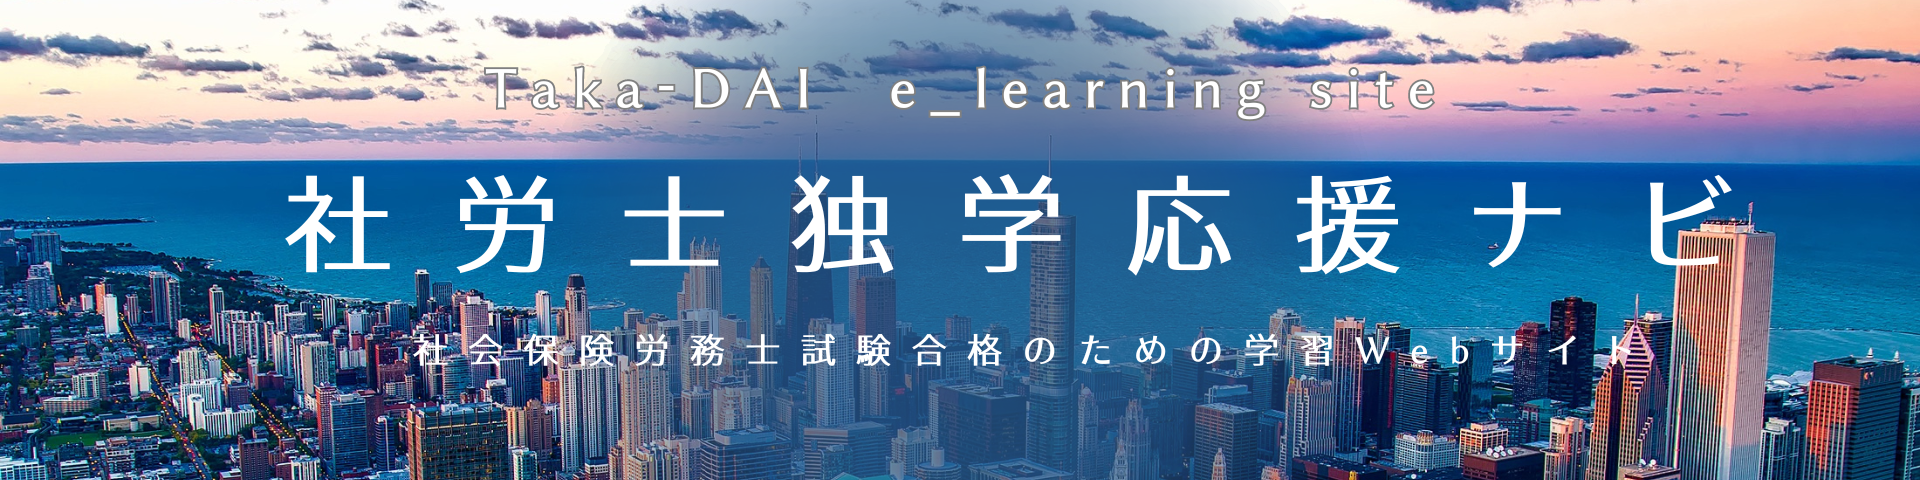 社労士独学応援ナビ｜Taka-DAI e_Learning